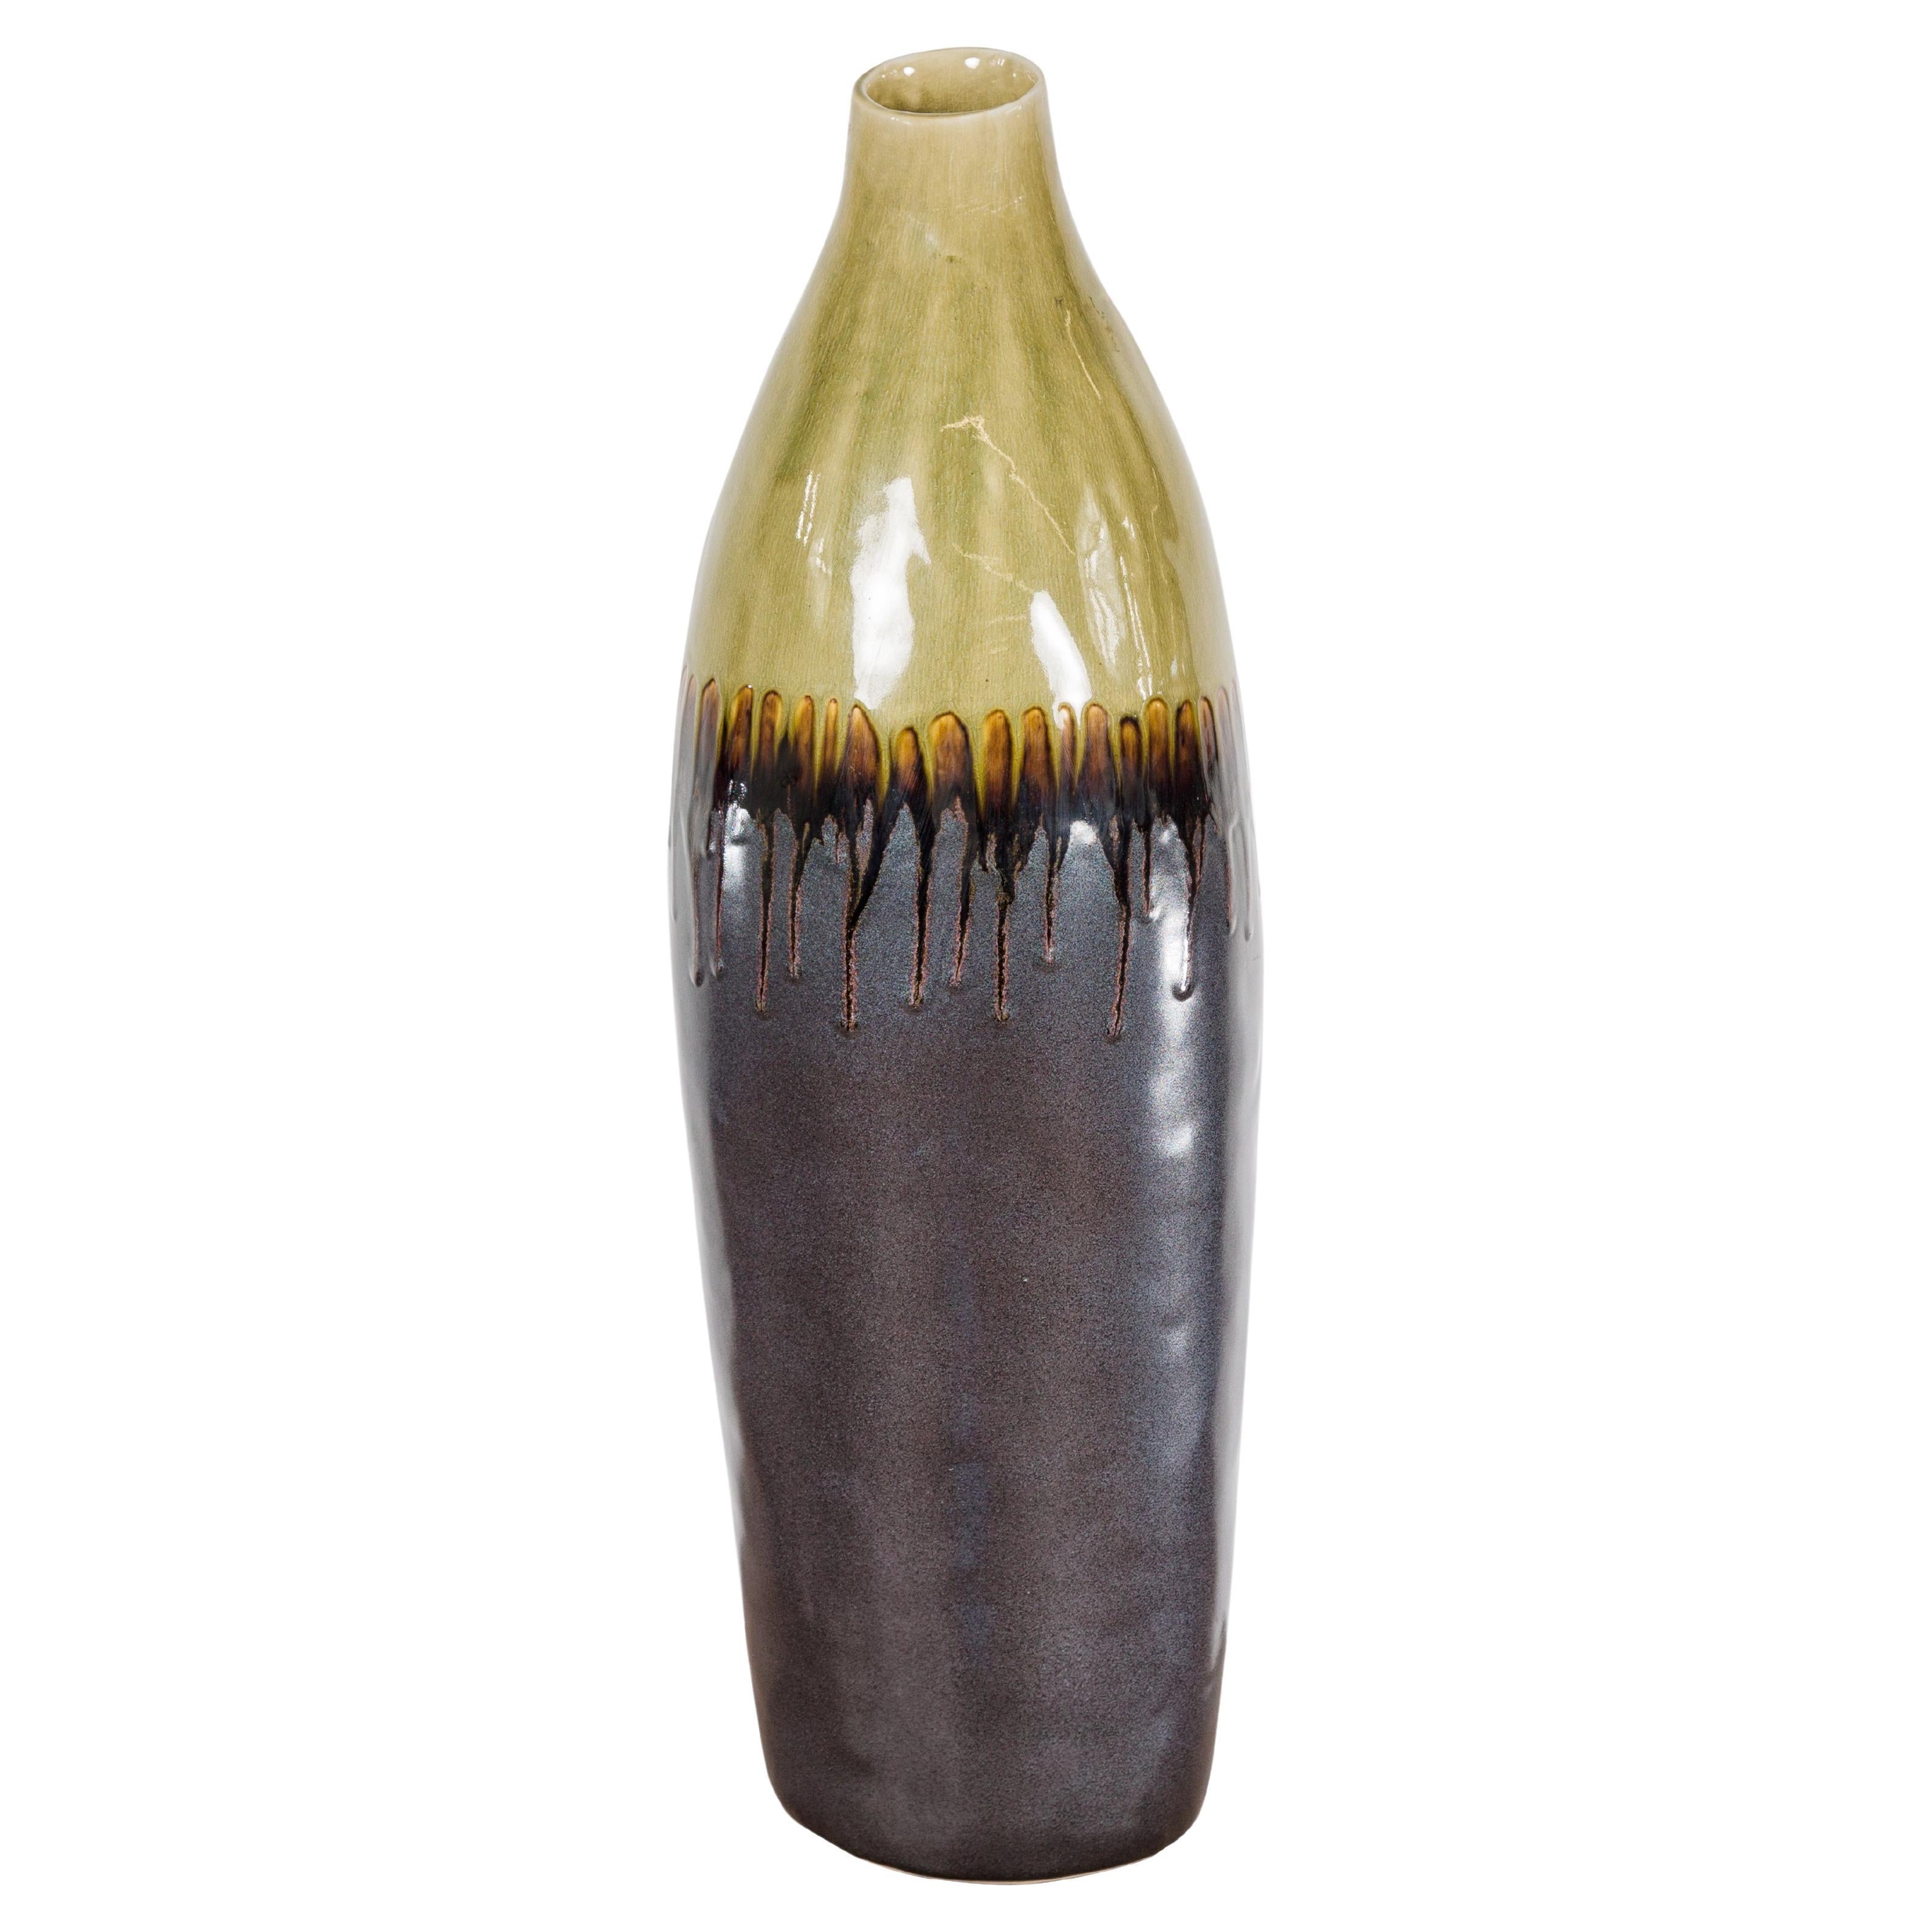 Vase en céramique artisanale faite à la main avec des coulures vert olive, gris foncé et Brown